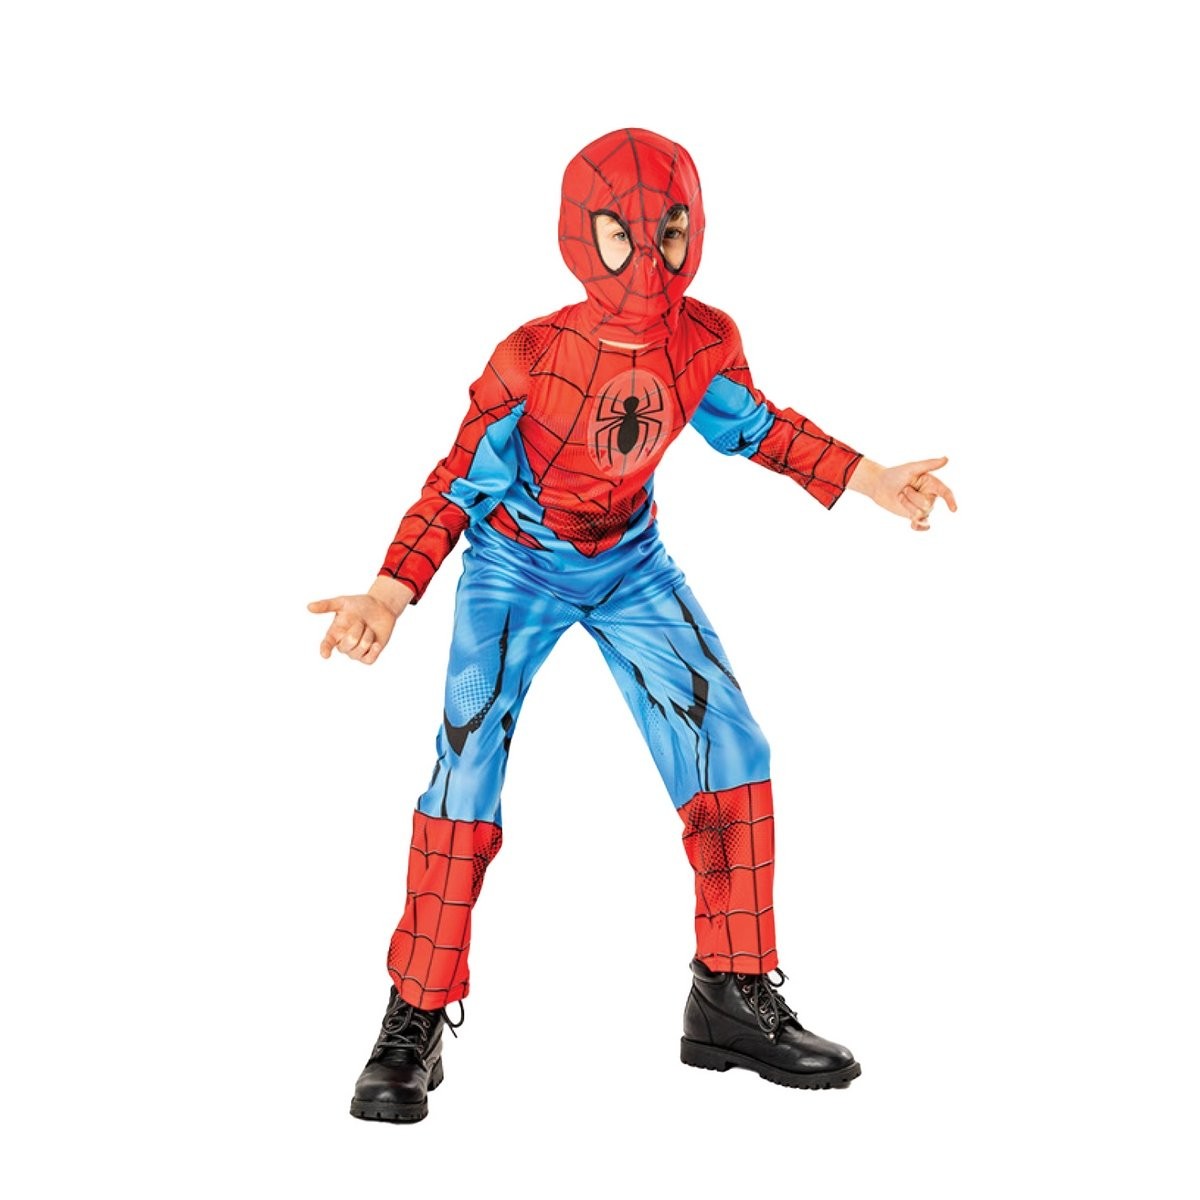 Déguisement Spiderman noir rouge et une cagoule, 5-6 ans